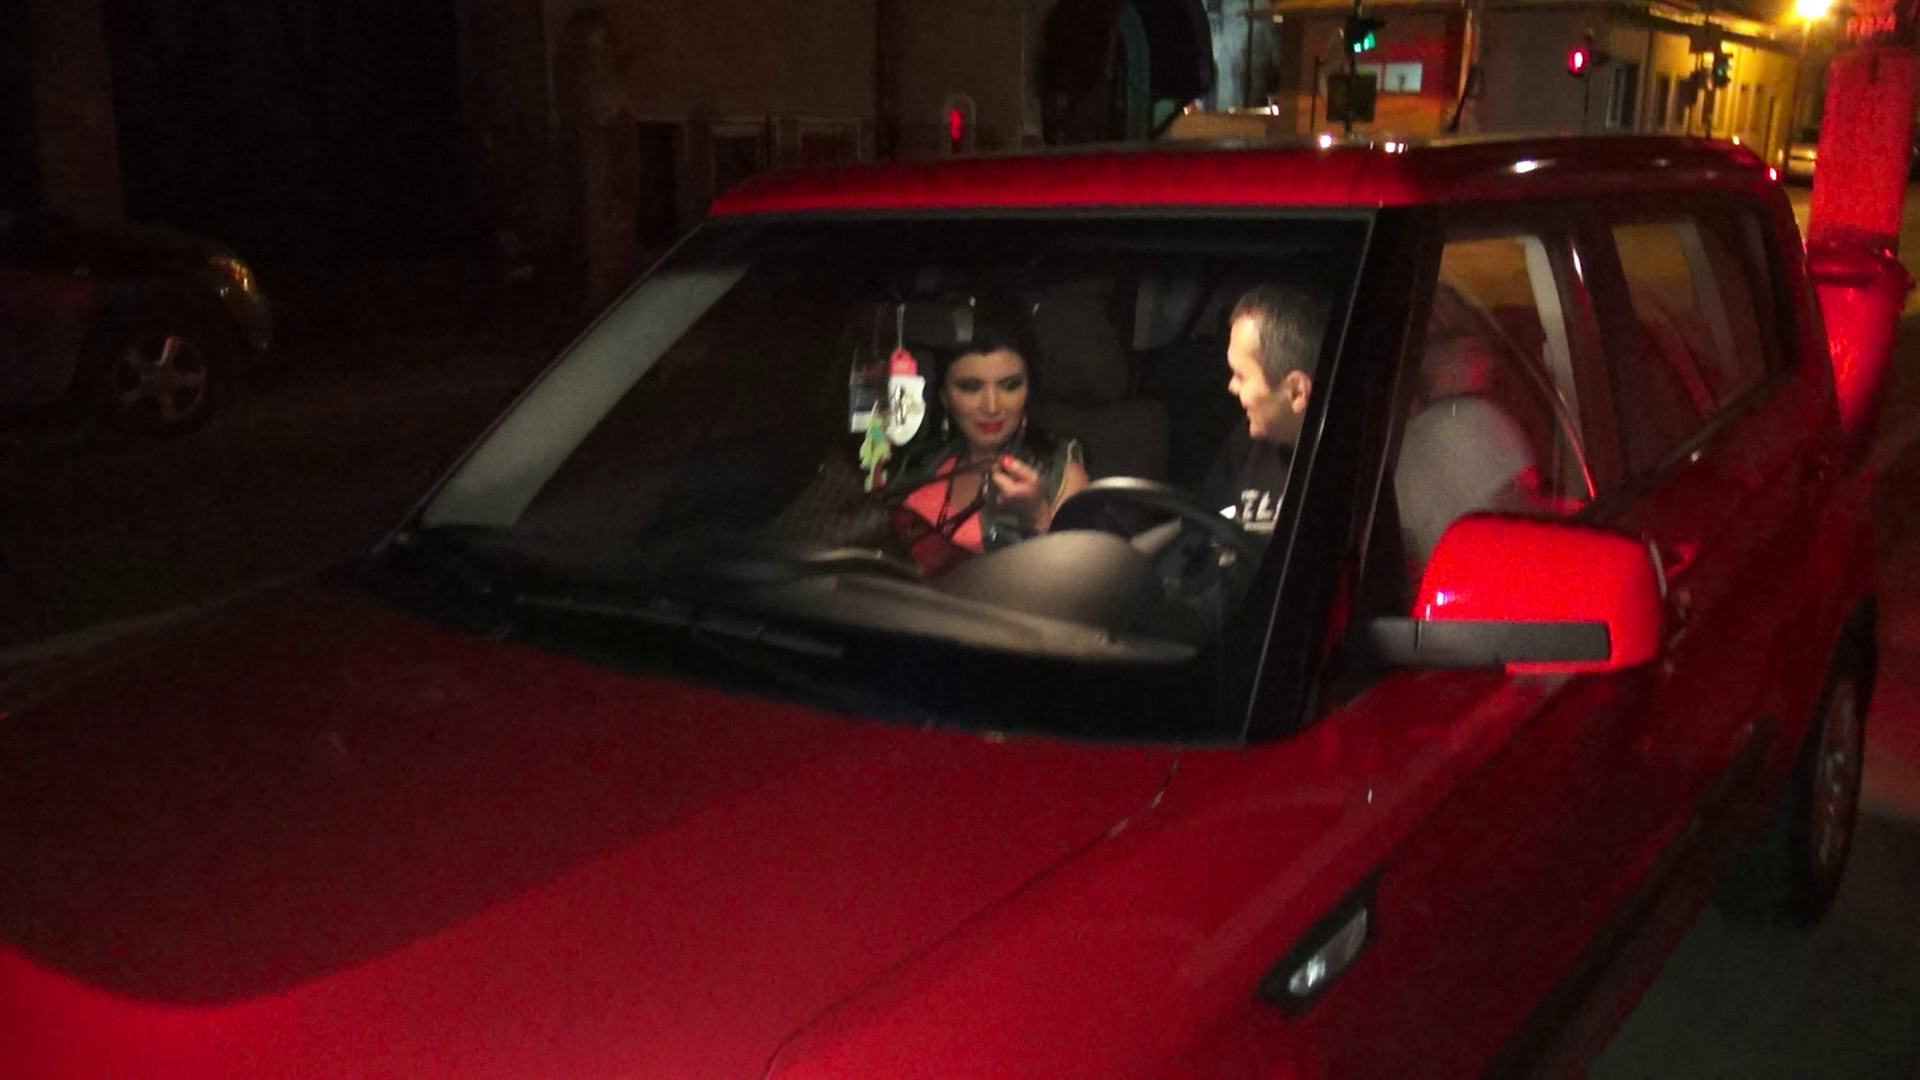 Adriana si Mihai au ajuns acasa, dar au mai ramas cateva minute in masina, prinsi intr-o discutie aparent trista